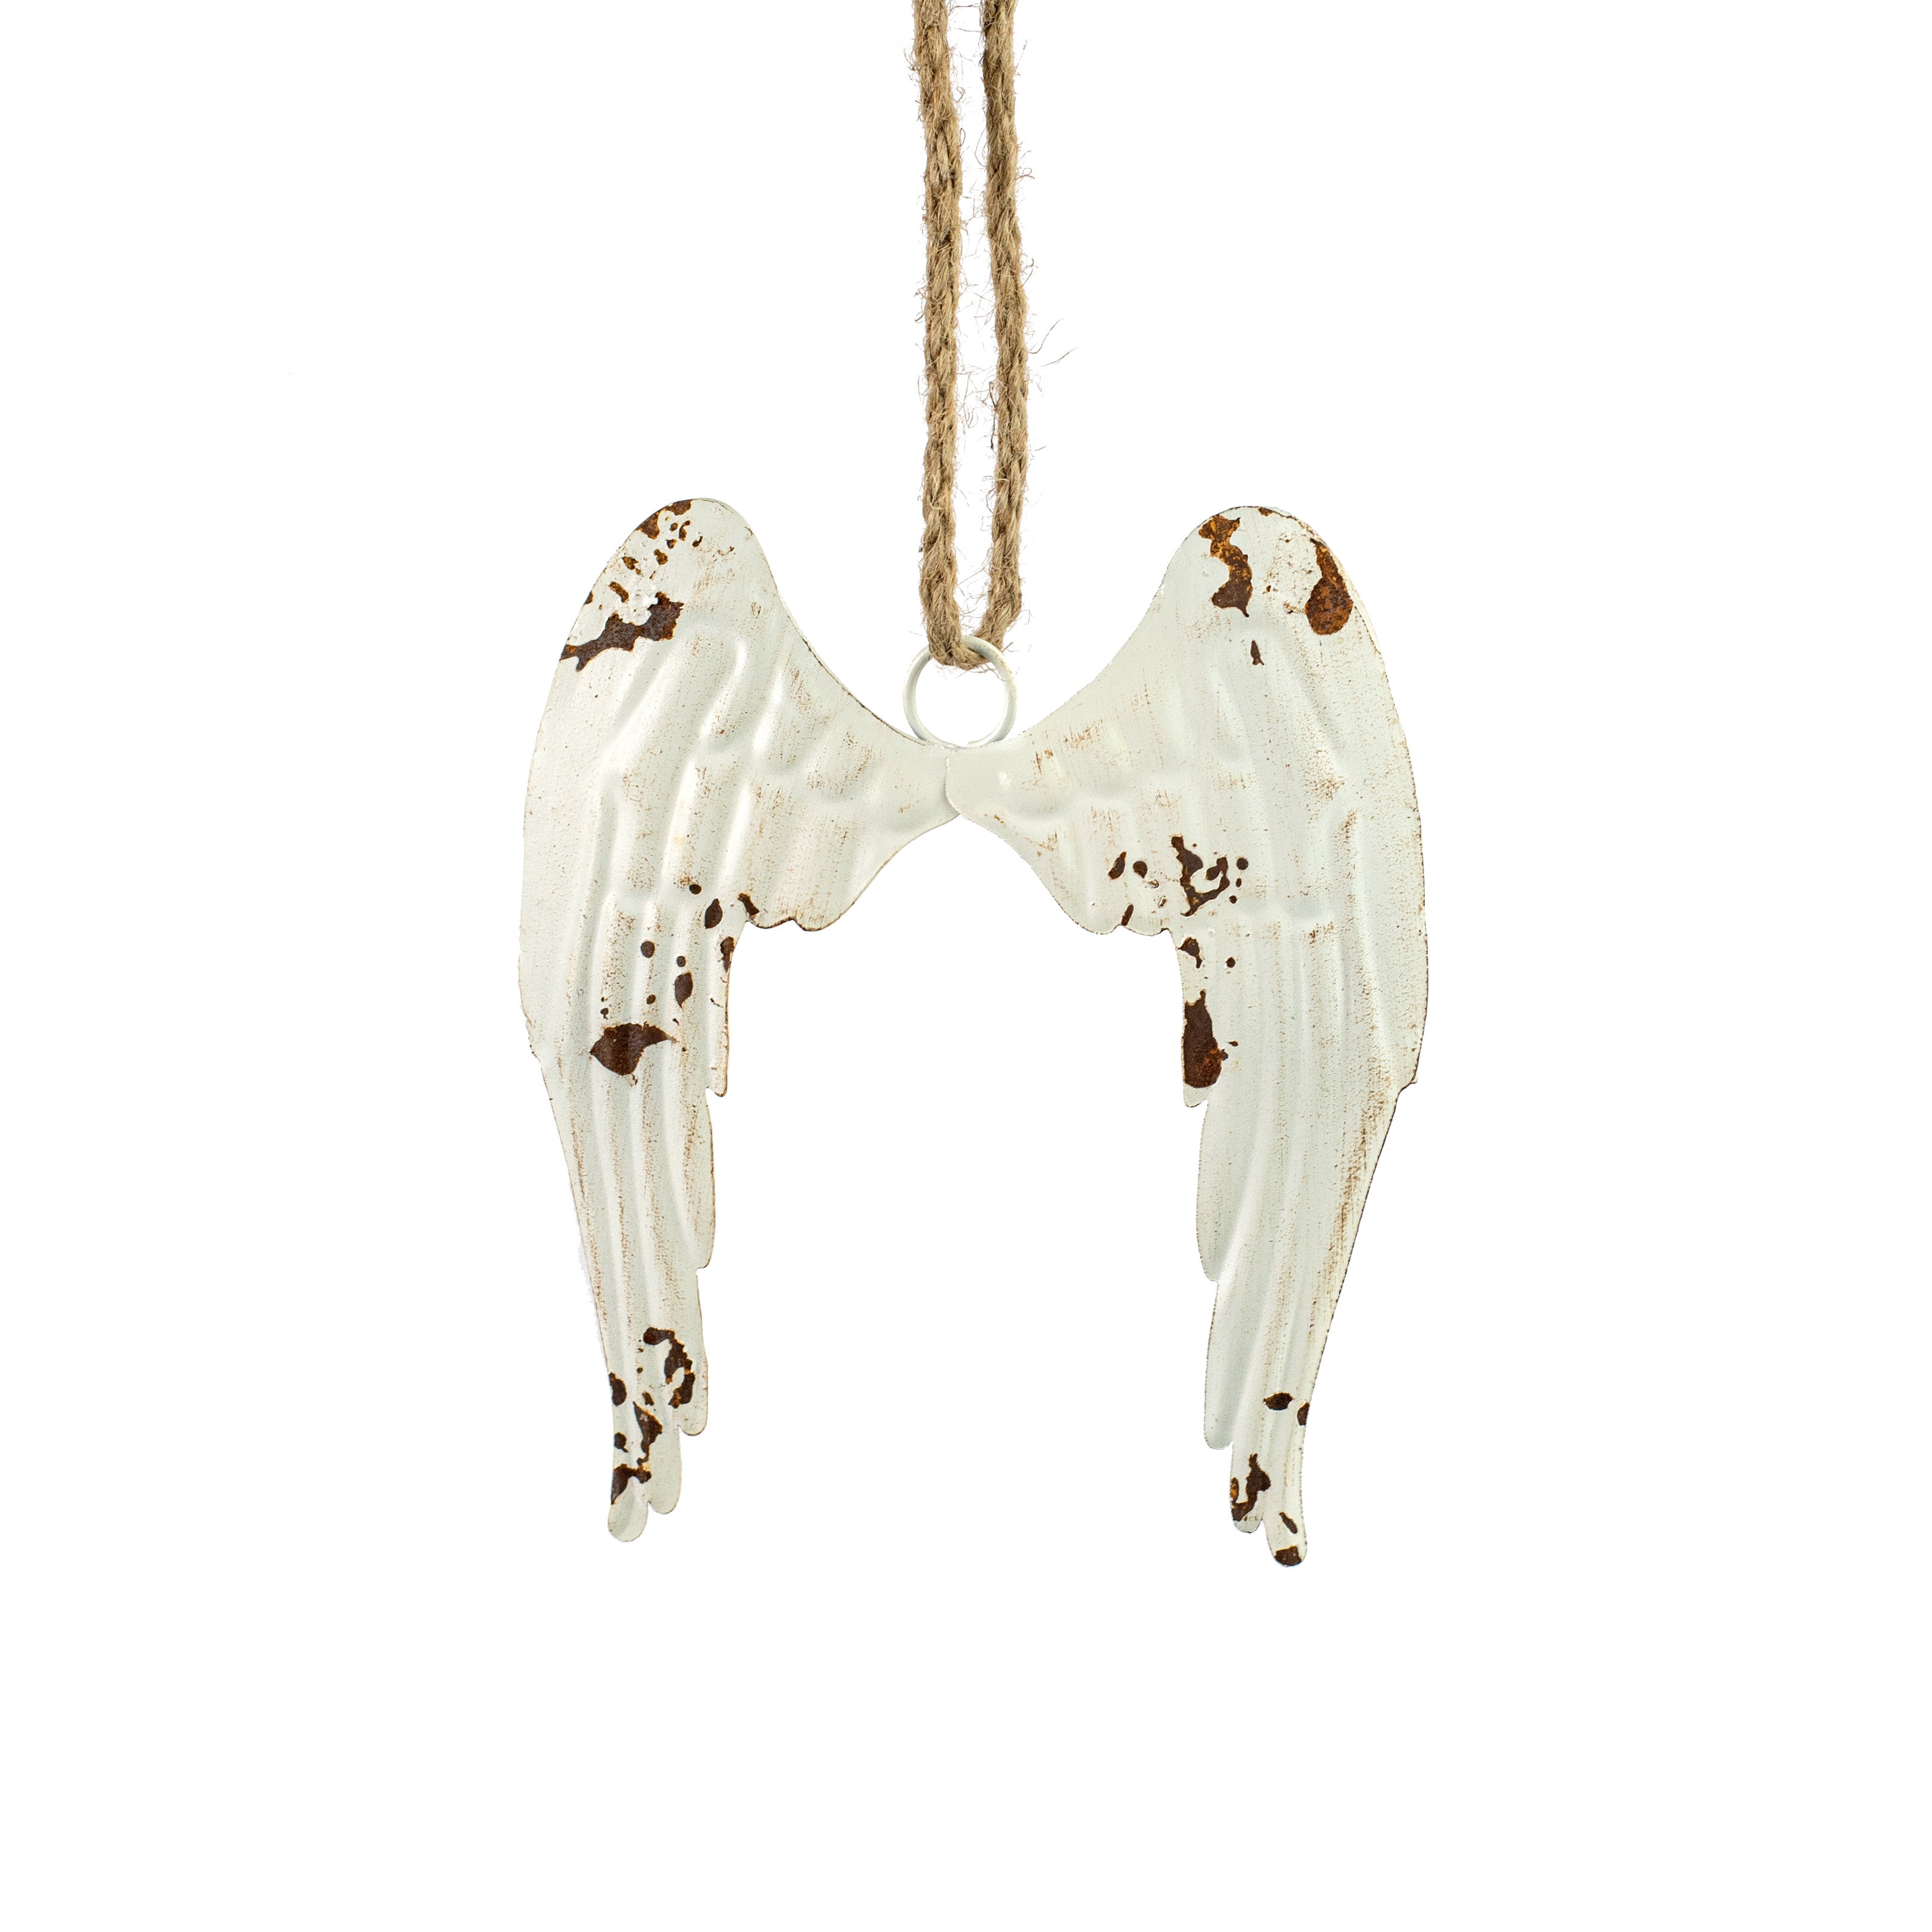 7" Distressed Metal Angel Wings Ornament